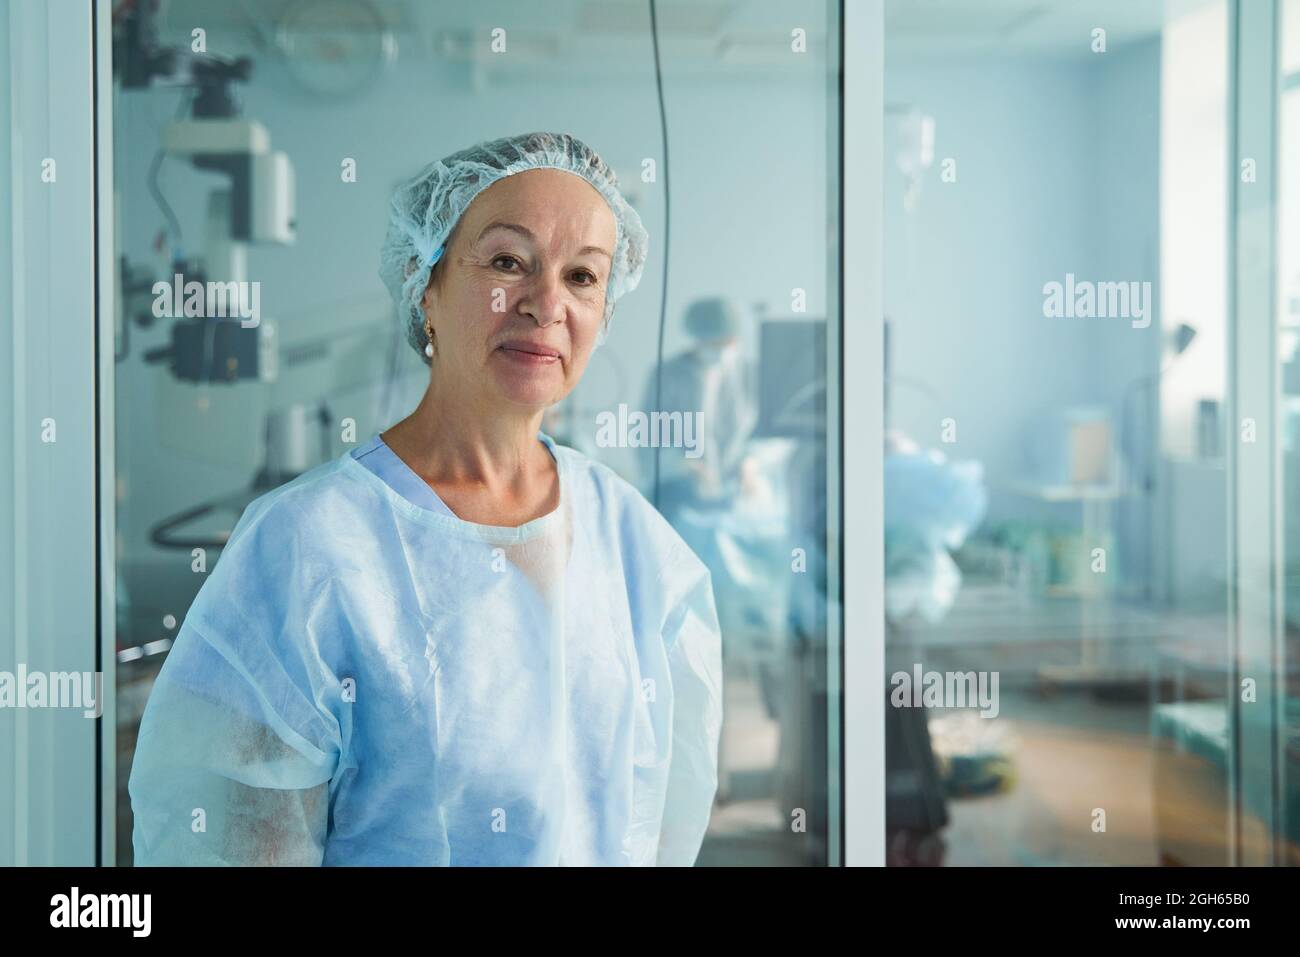 Freundliche Ärztin mittleren Alters in OP-Uniform, die die Kamera gegen einen nicht erkennbaren Kollegen im Krankenhaus anschaut Stockfoto